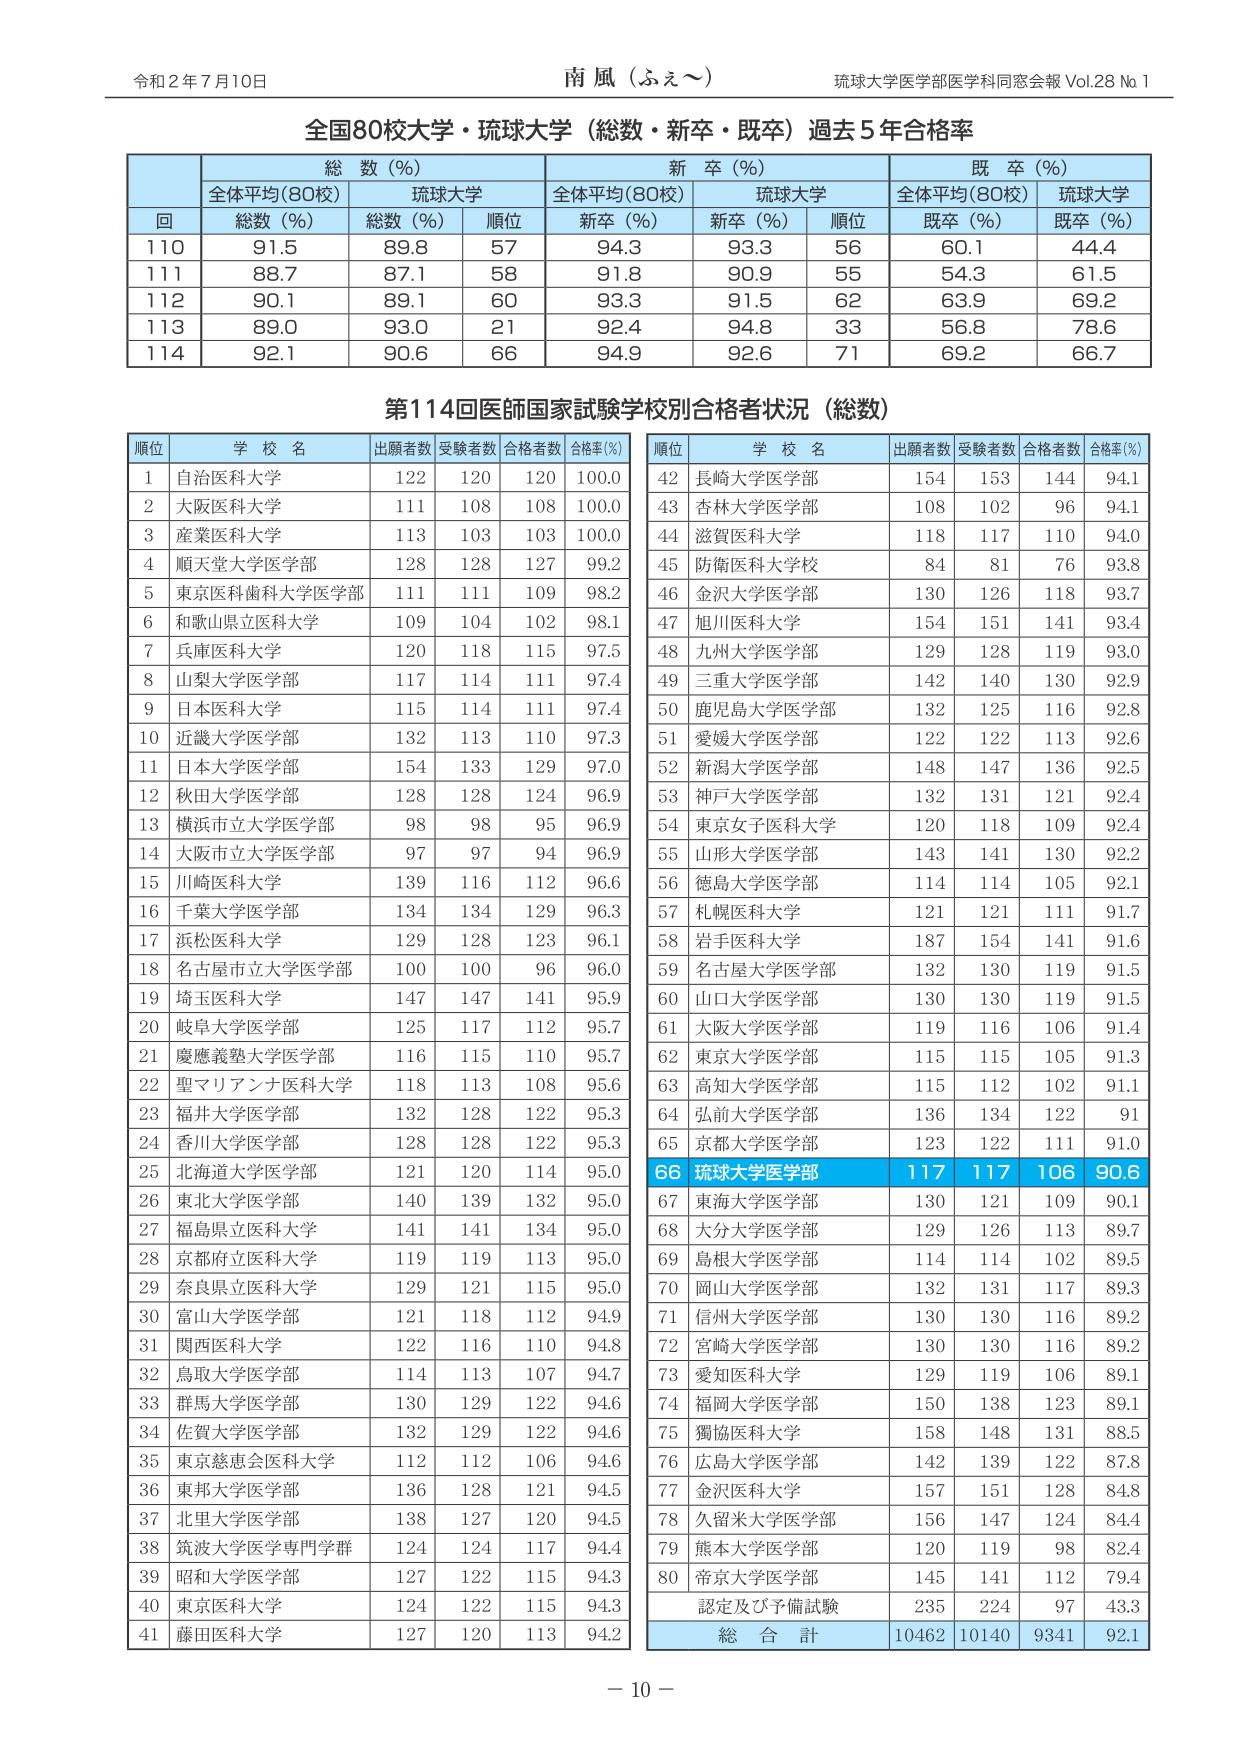 医師国家試験琉球大学の結果報告(2)